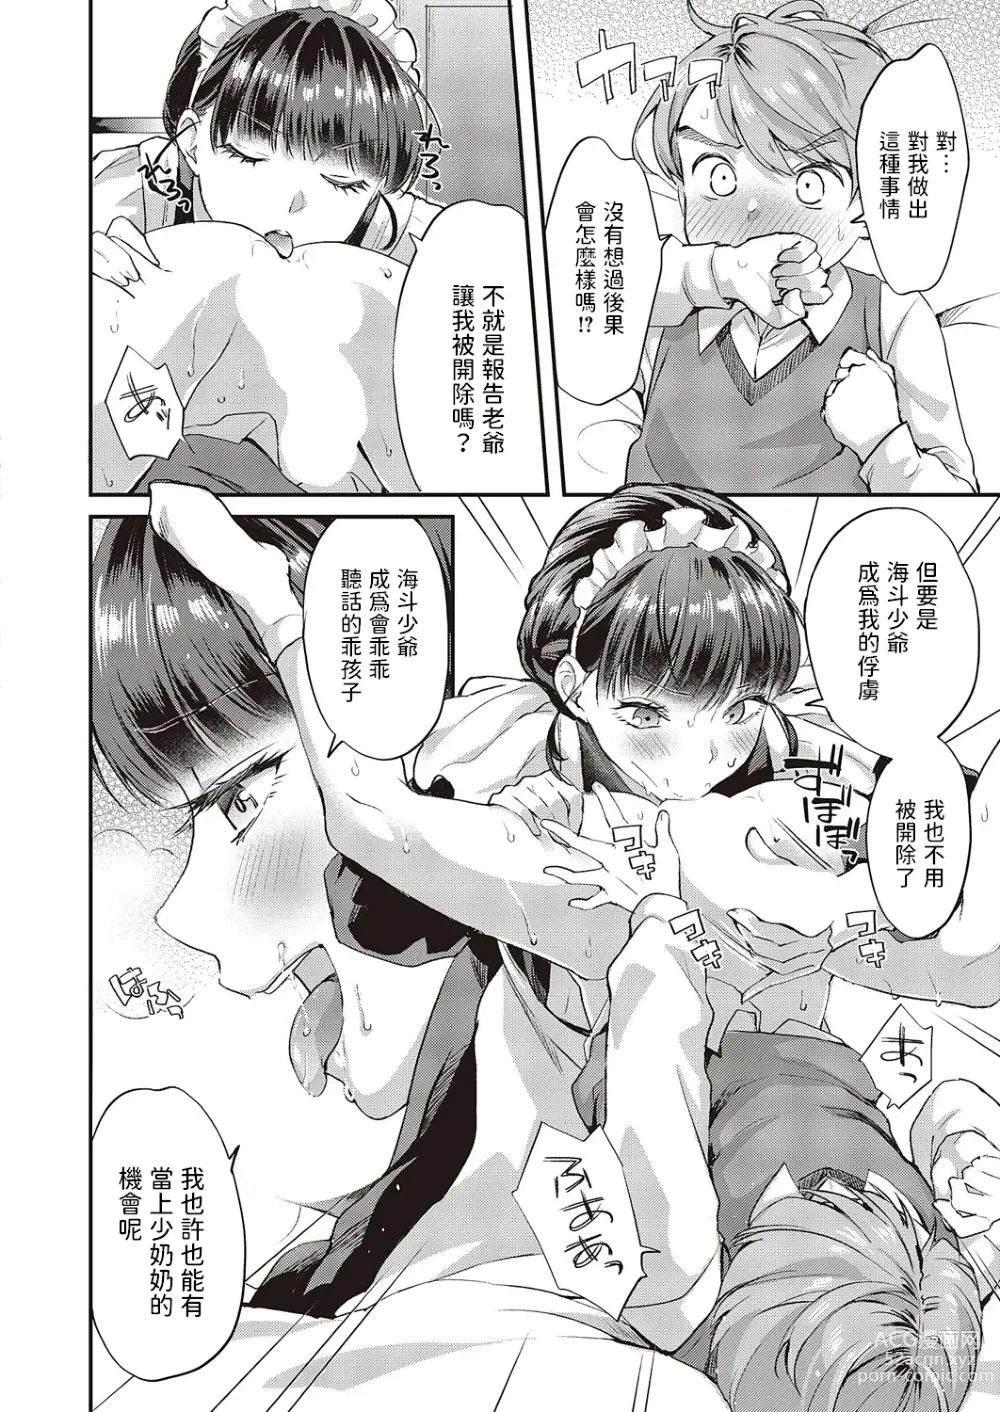 Page 6 of manga Maid-san no Seikatsu Shidou